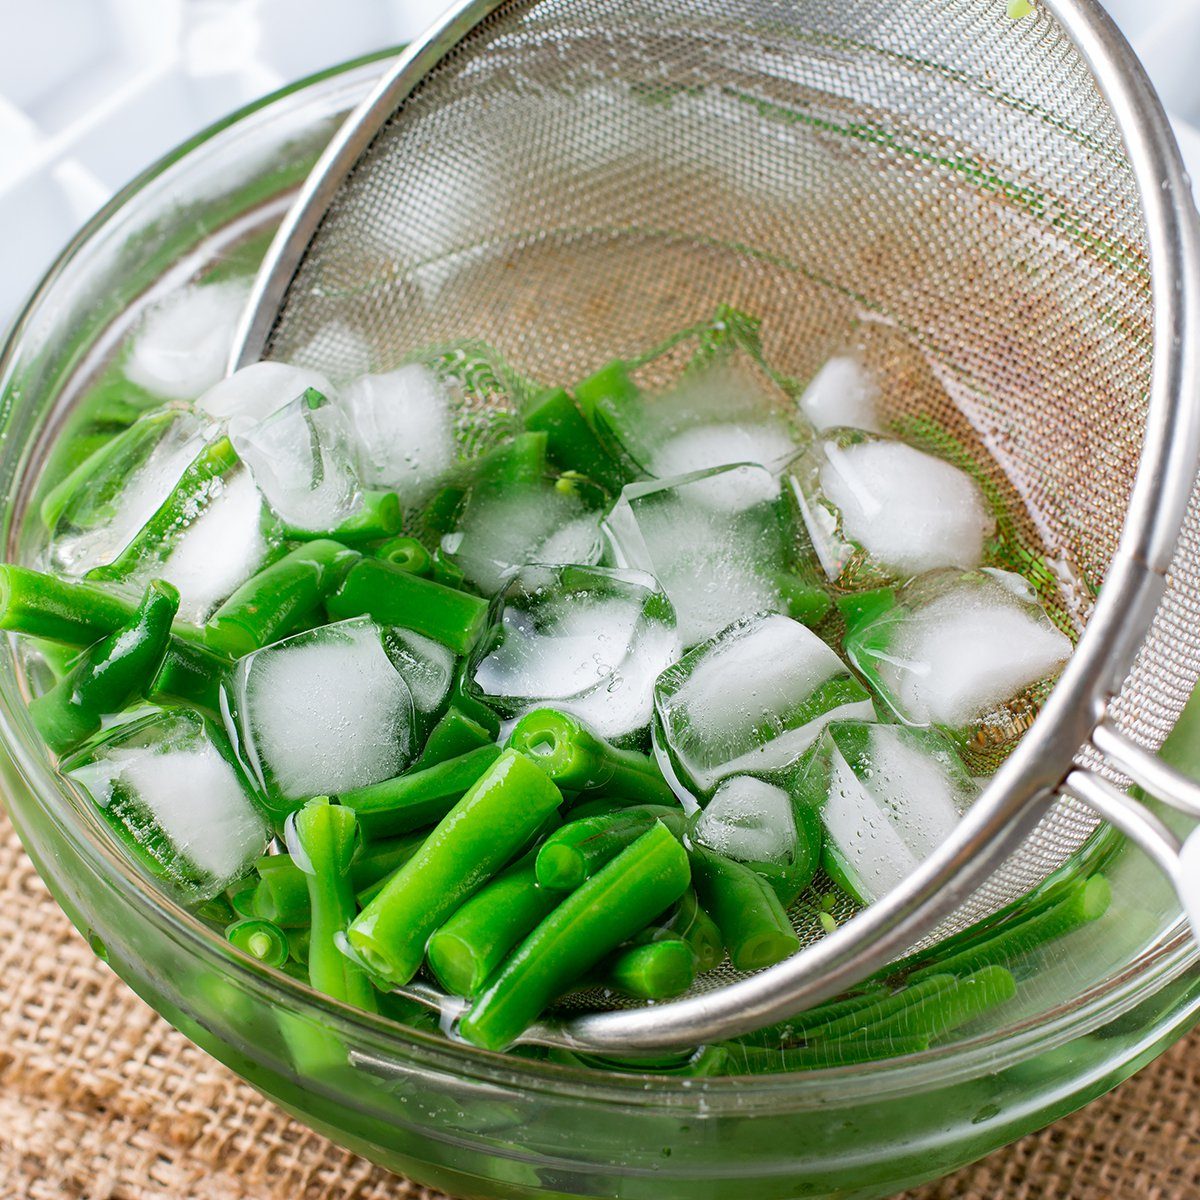 Boiled vegetables, green beans